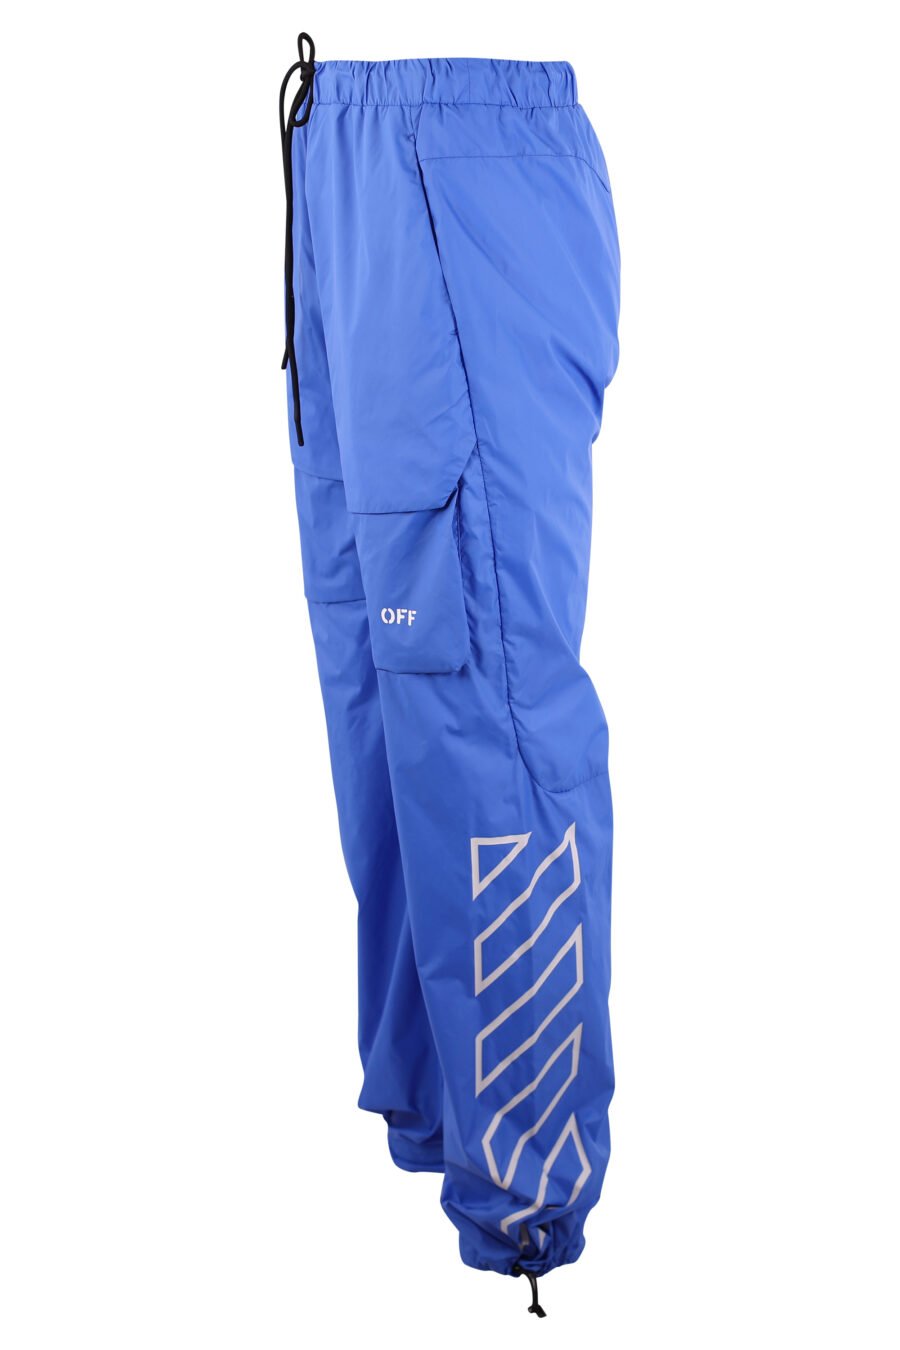 Pantalon cargo azul logo blanco "Diagonals" - IMG 3188